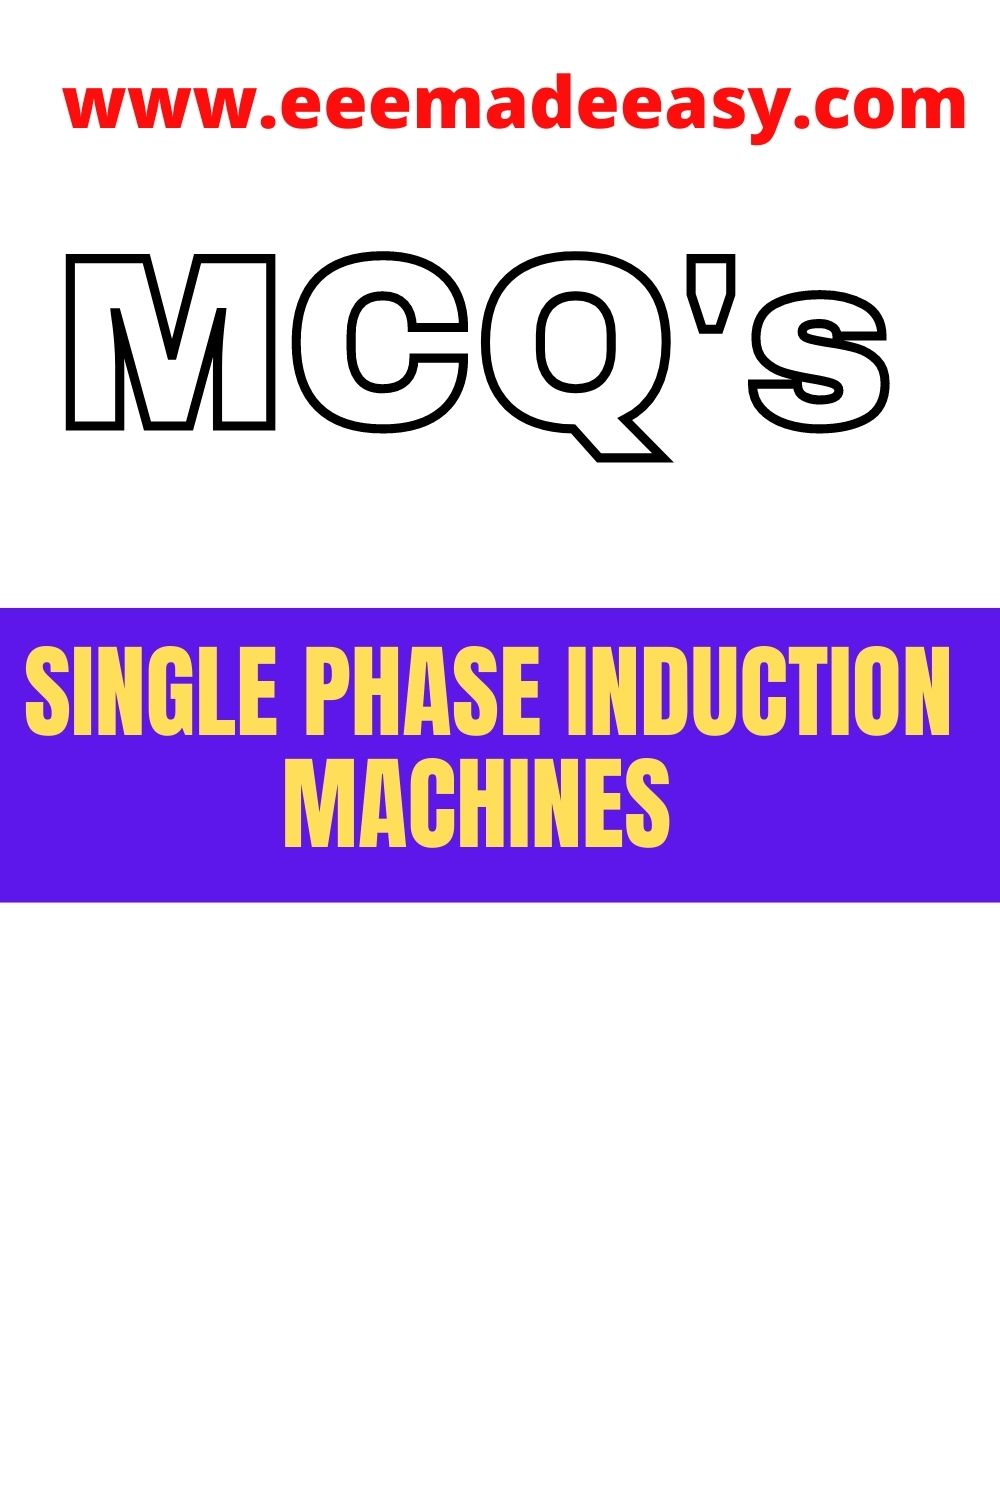 single phase induction machines